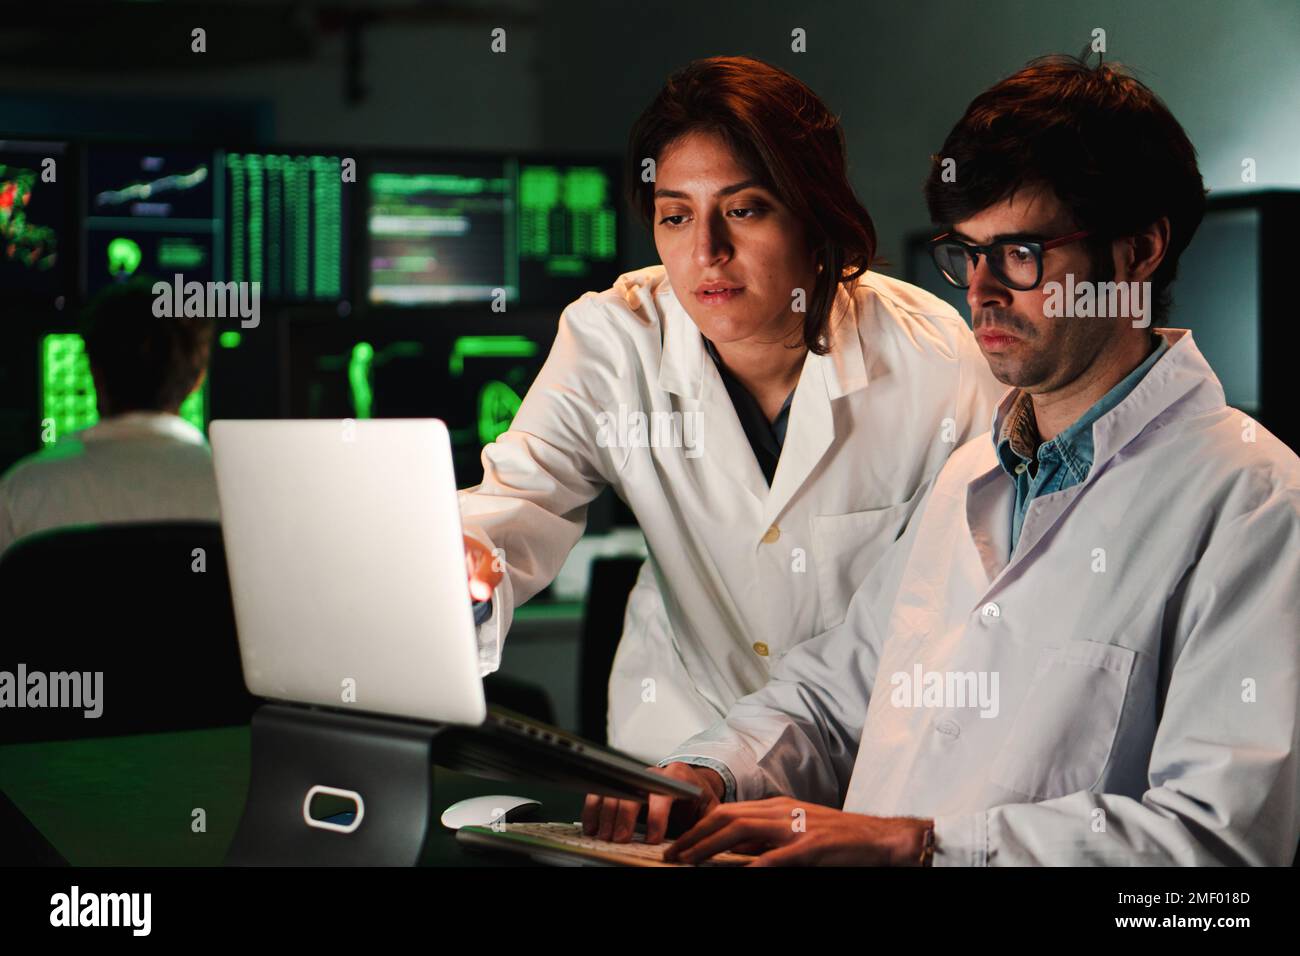 Deux médecins scientifiques concentrés avec une blouse de laboratoire analysant un test de pharmacie avec un ordinateur portable. Un couple de médecins travaillant dans une enquête de biologie. Concept de la science. Photo de haute qualité Banque D'Images